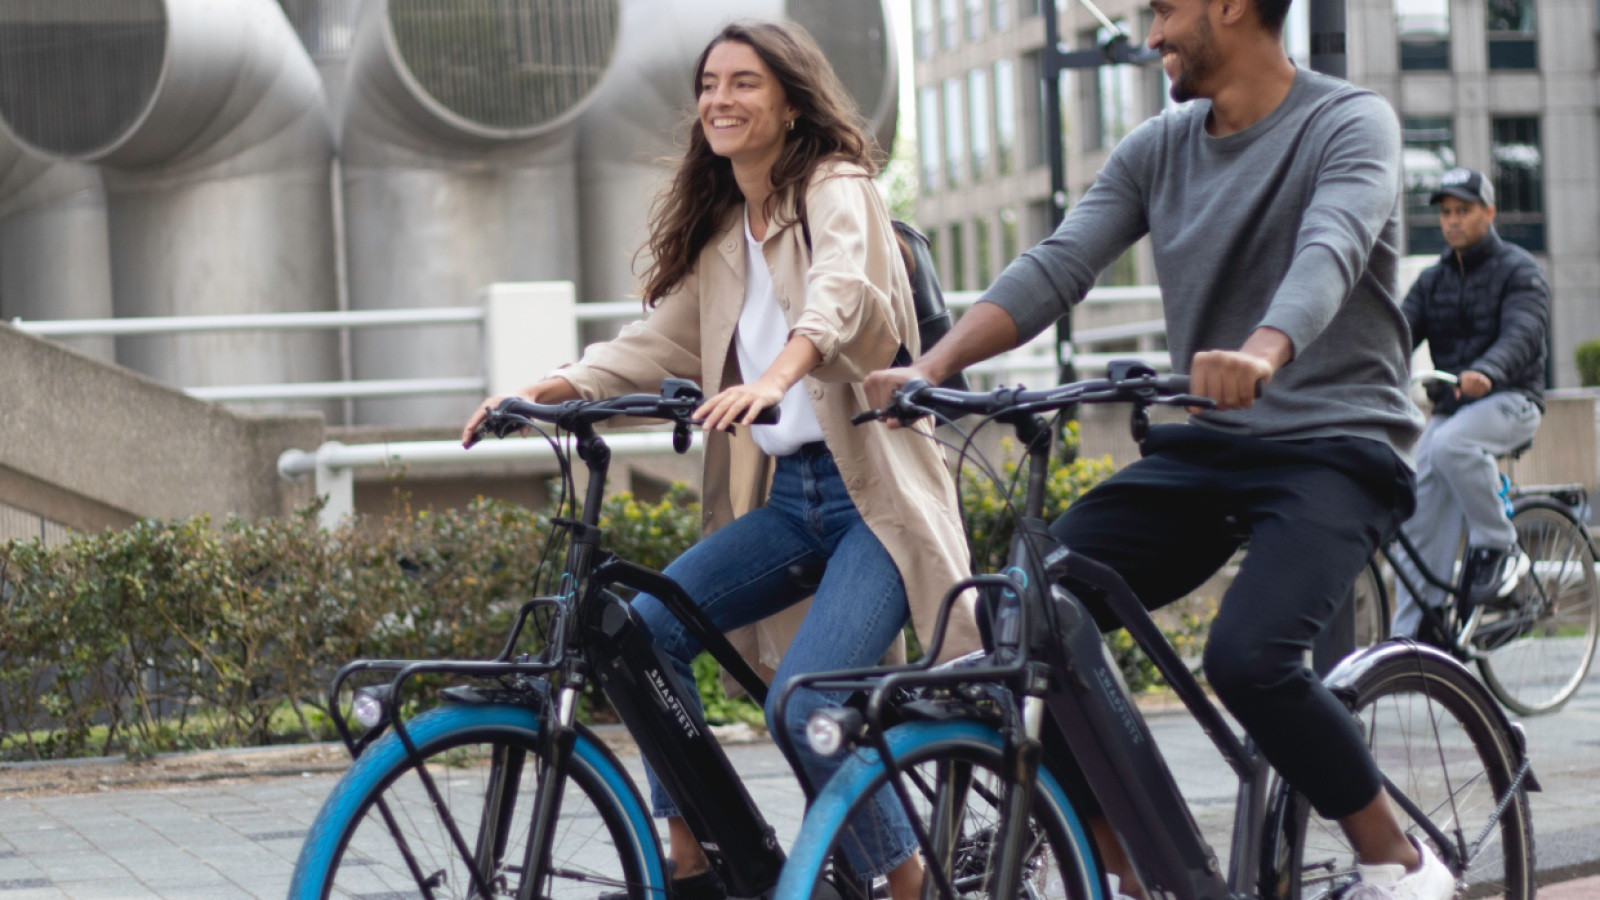 Swapfiets gaat abonnementen voor e-bikes aanbieden in Amsterdam Nieuws